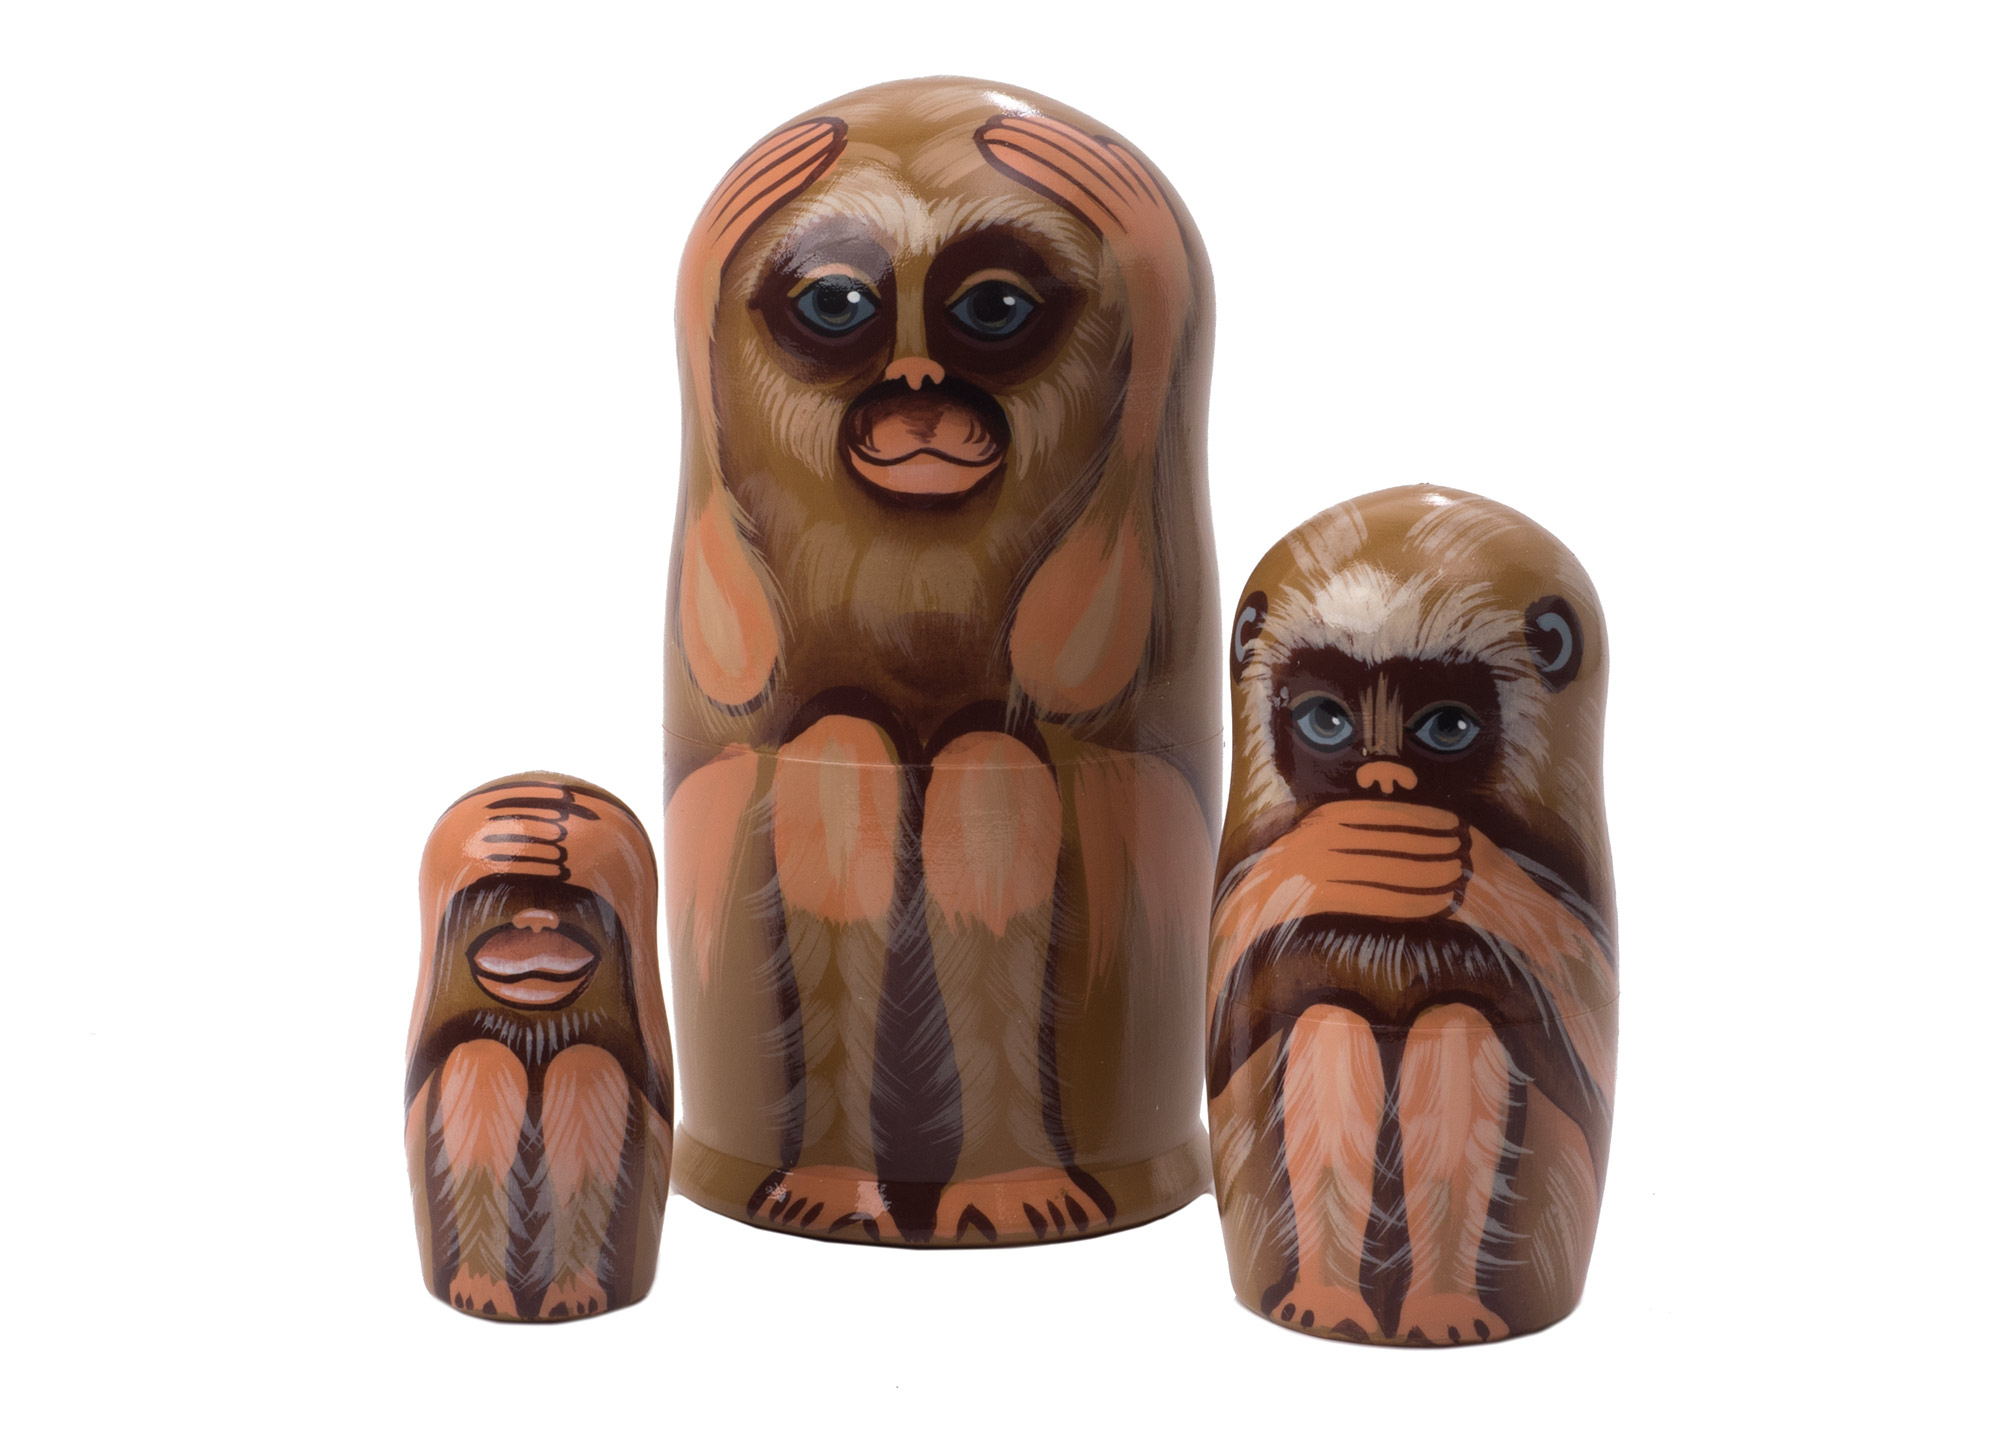 Buy Матрешка «Три обезьяны» 3 места 8 см at GoldenCockerel.com